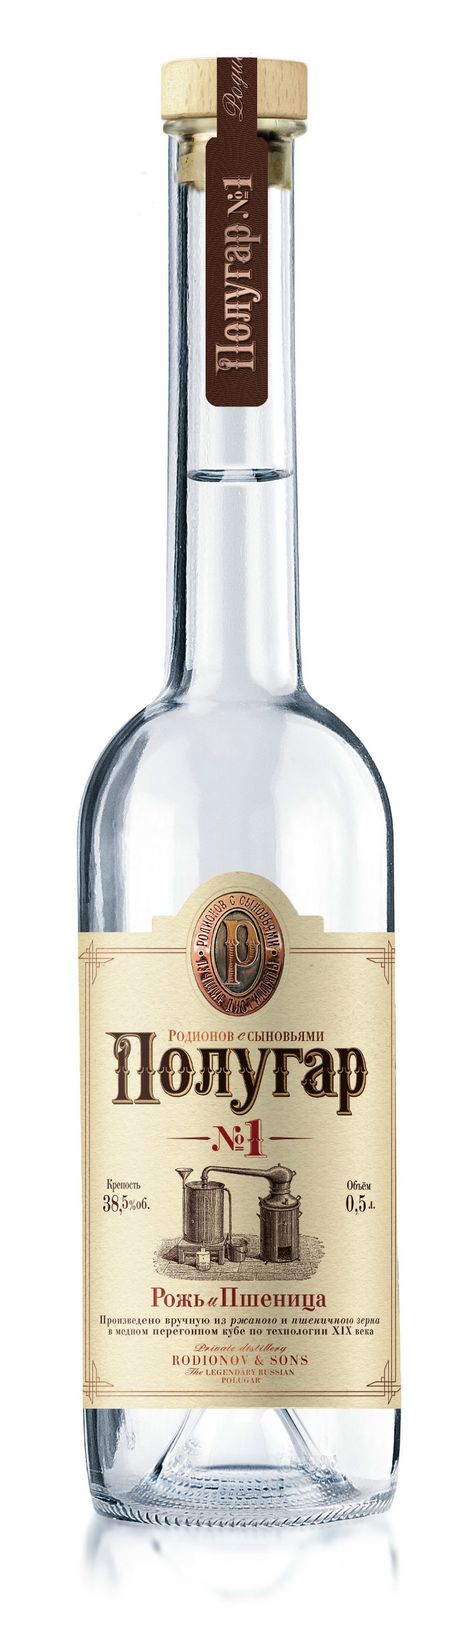 Полугар (хлебное вино) – забытый русский спиртной напиток